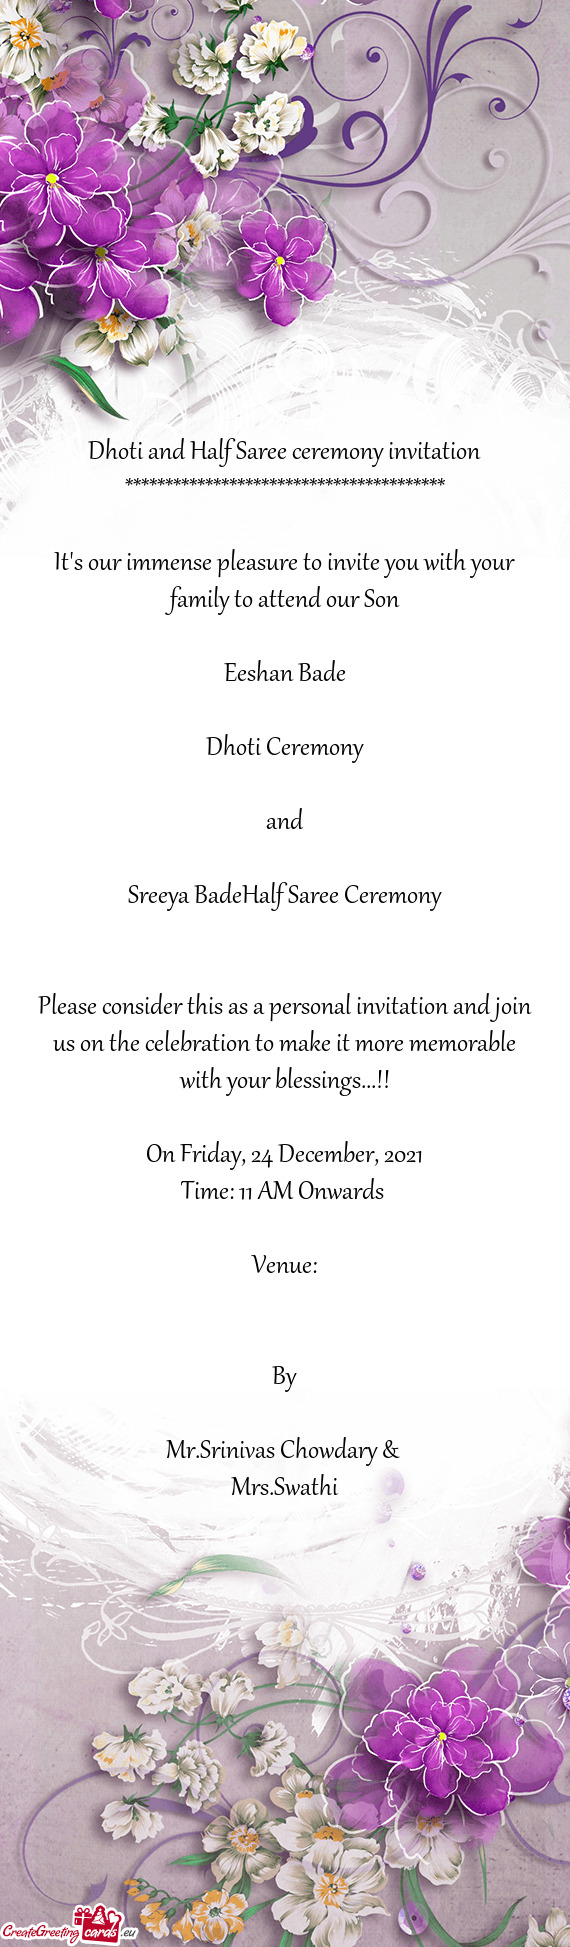 Sreeya BadeHalf Saree Ceremony